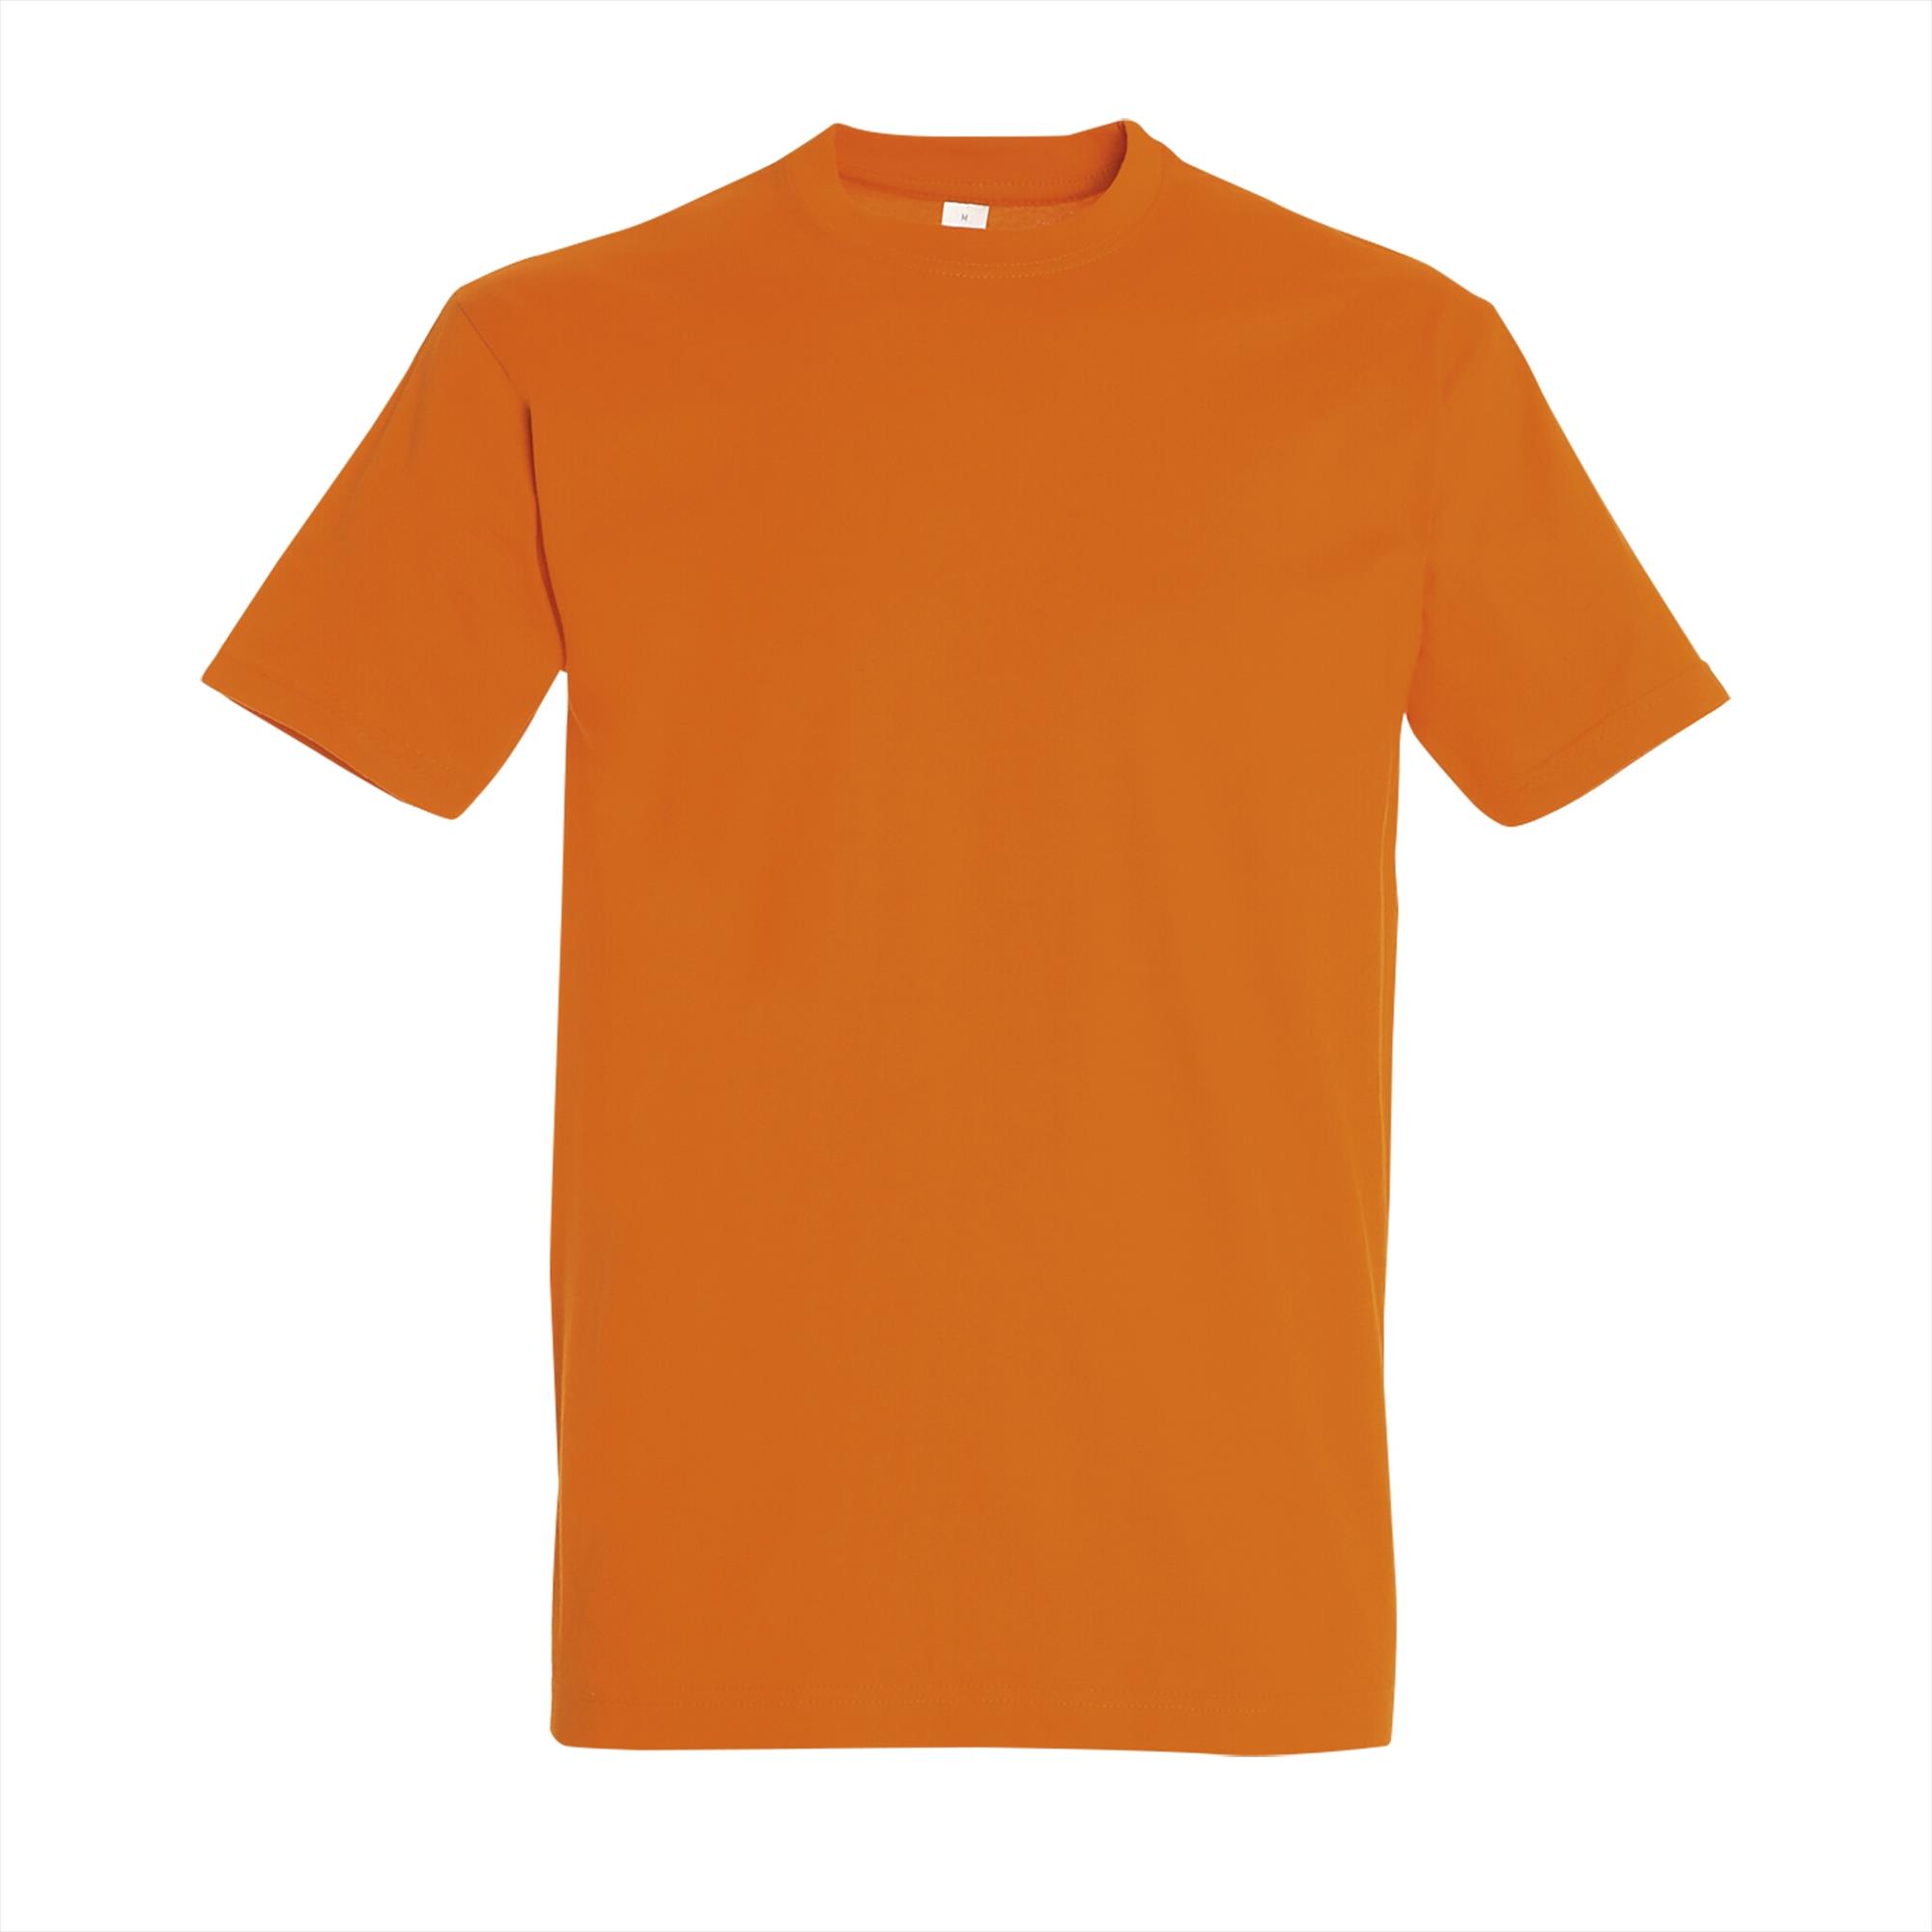 Oranje T-shirt bedrukken